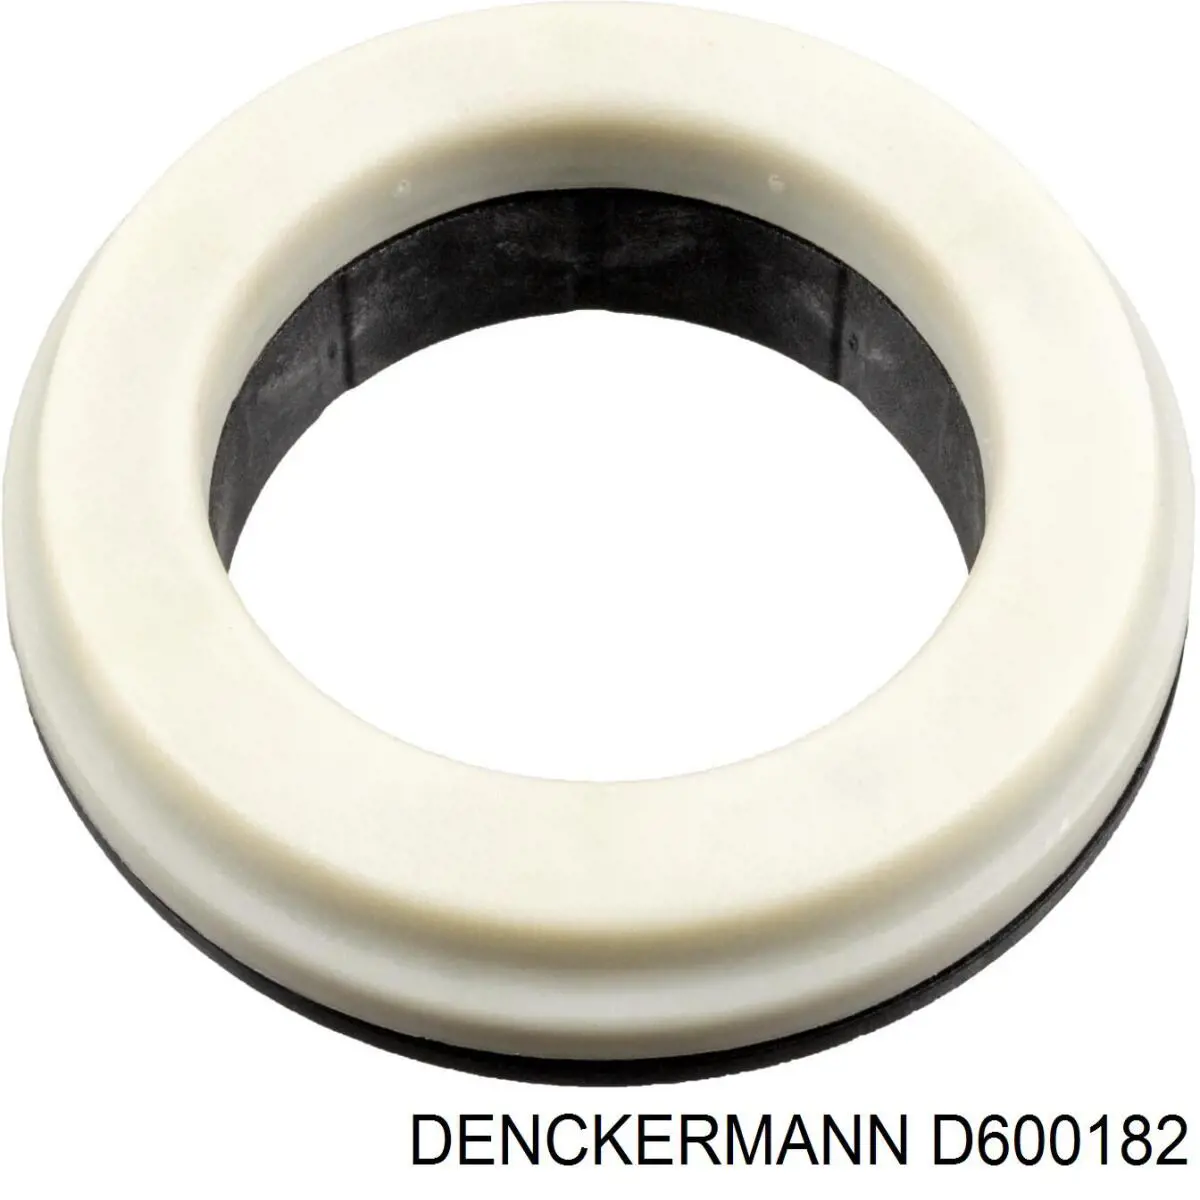 D600182 Denckermann rodamiento amortiguador delantero